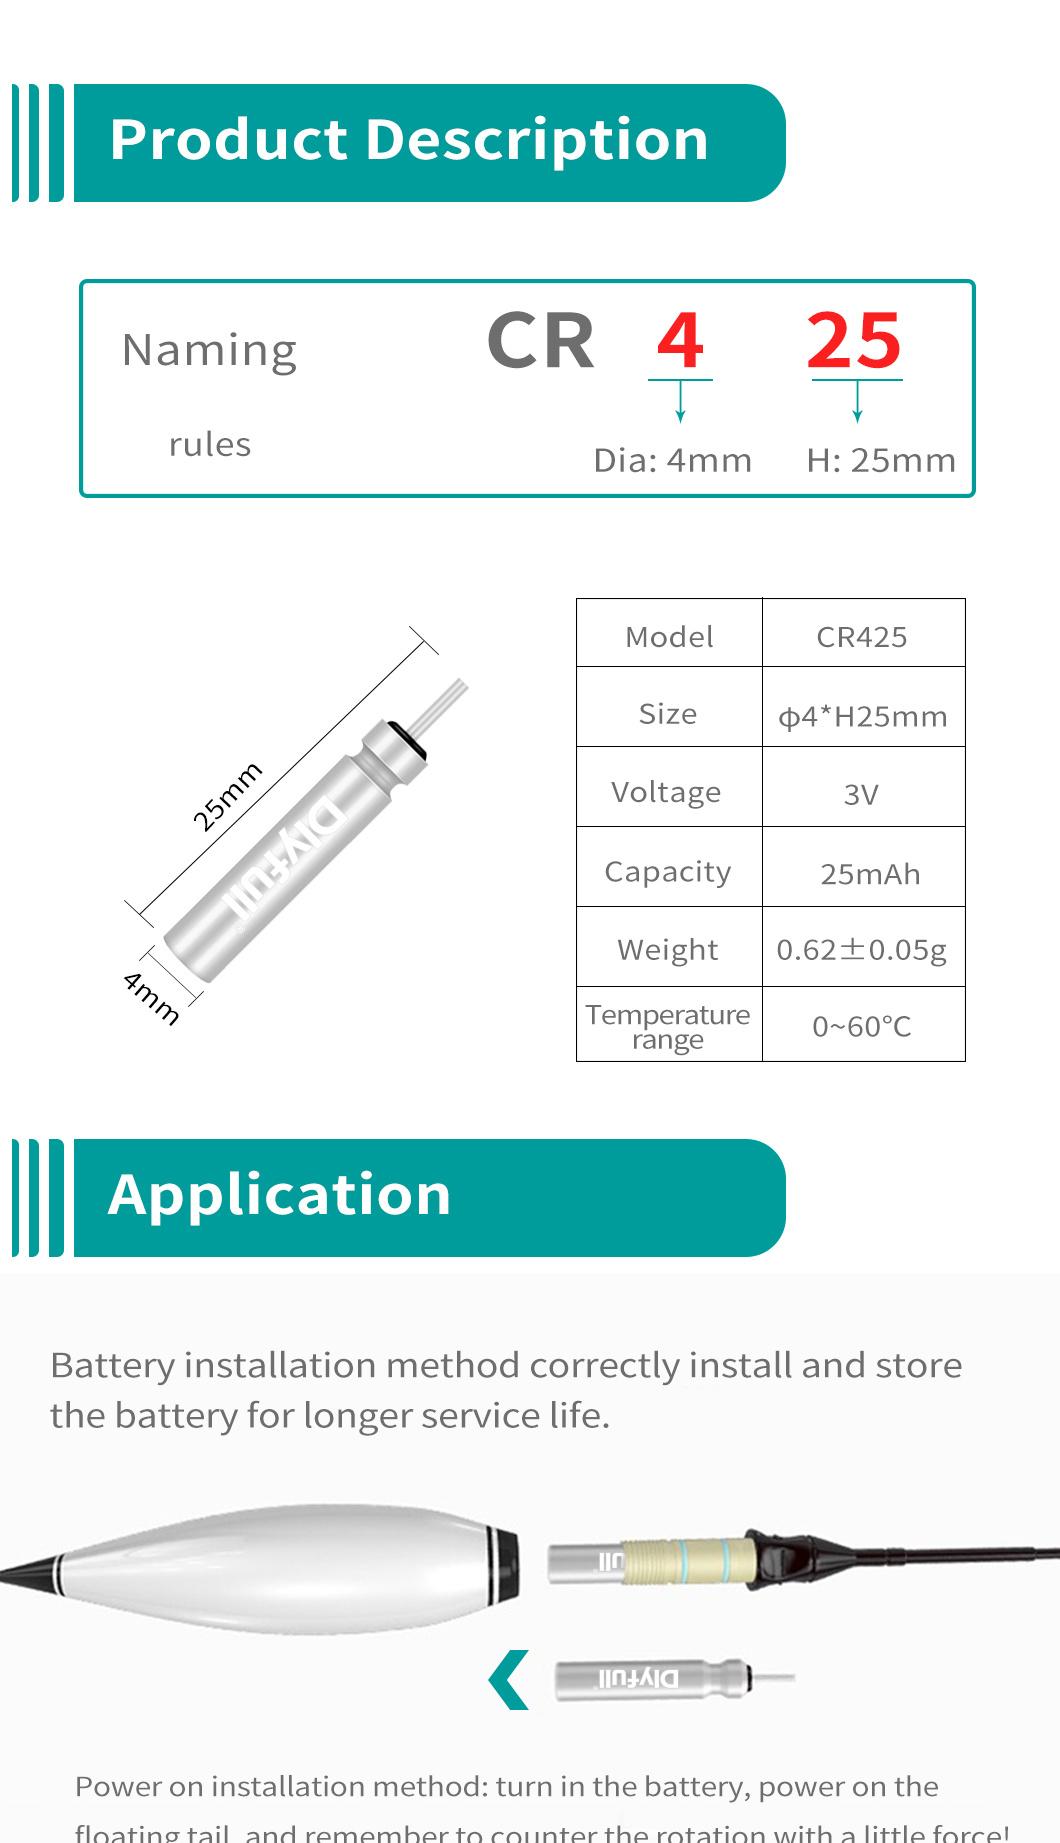 Dlyfull 3V Cr425 Pin Type Battery for Fishing Toy Lithium Battery